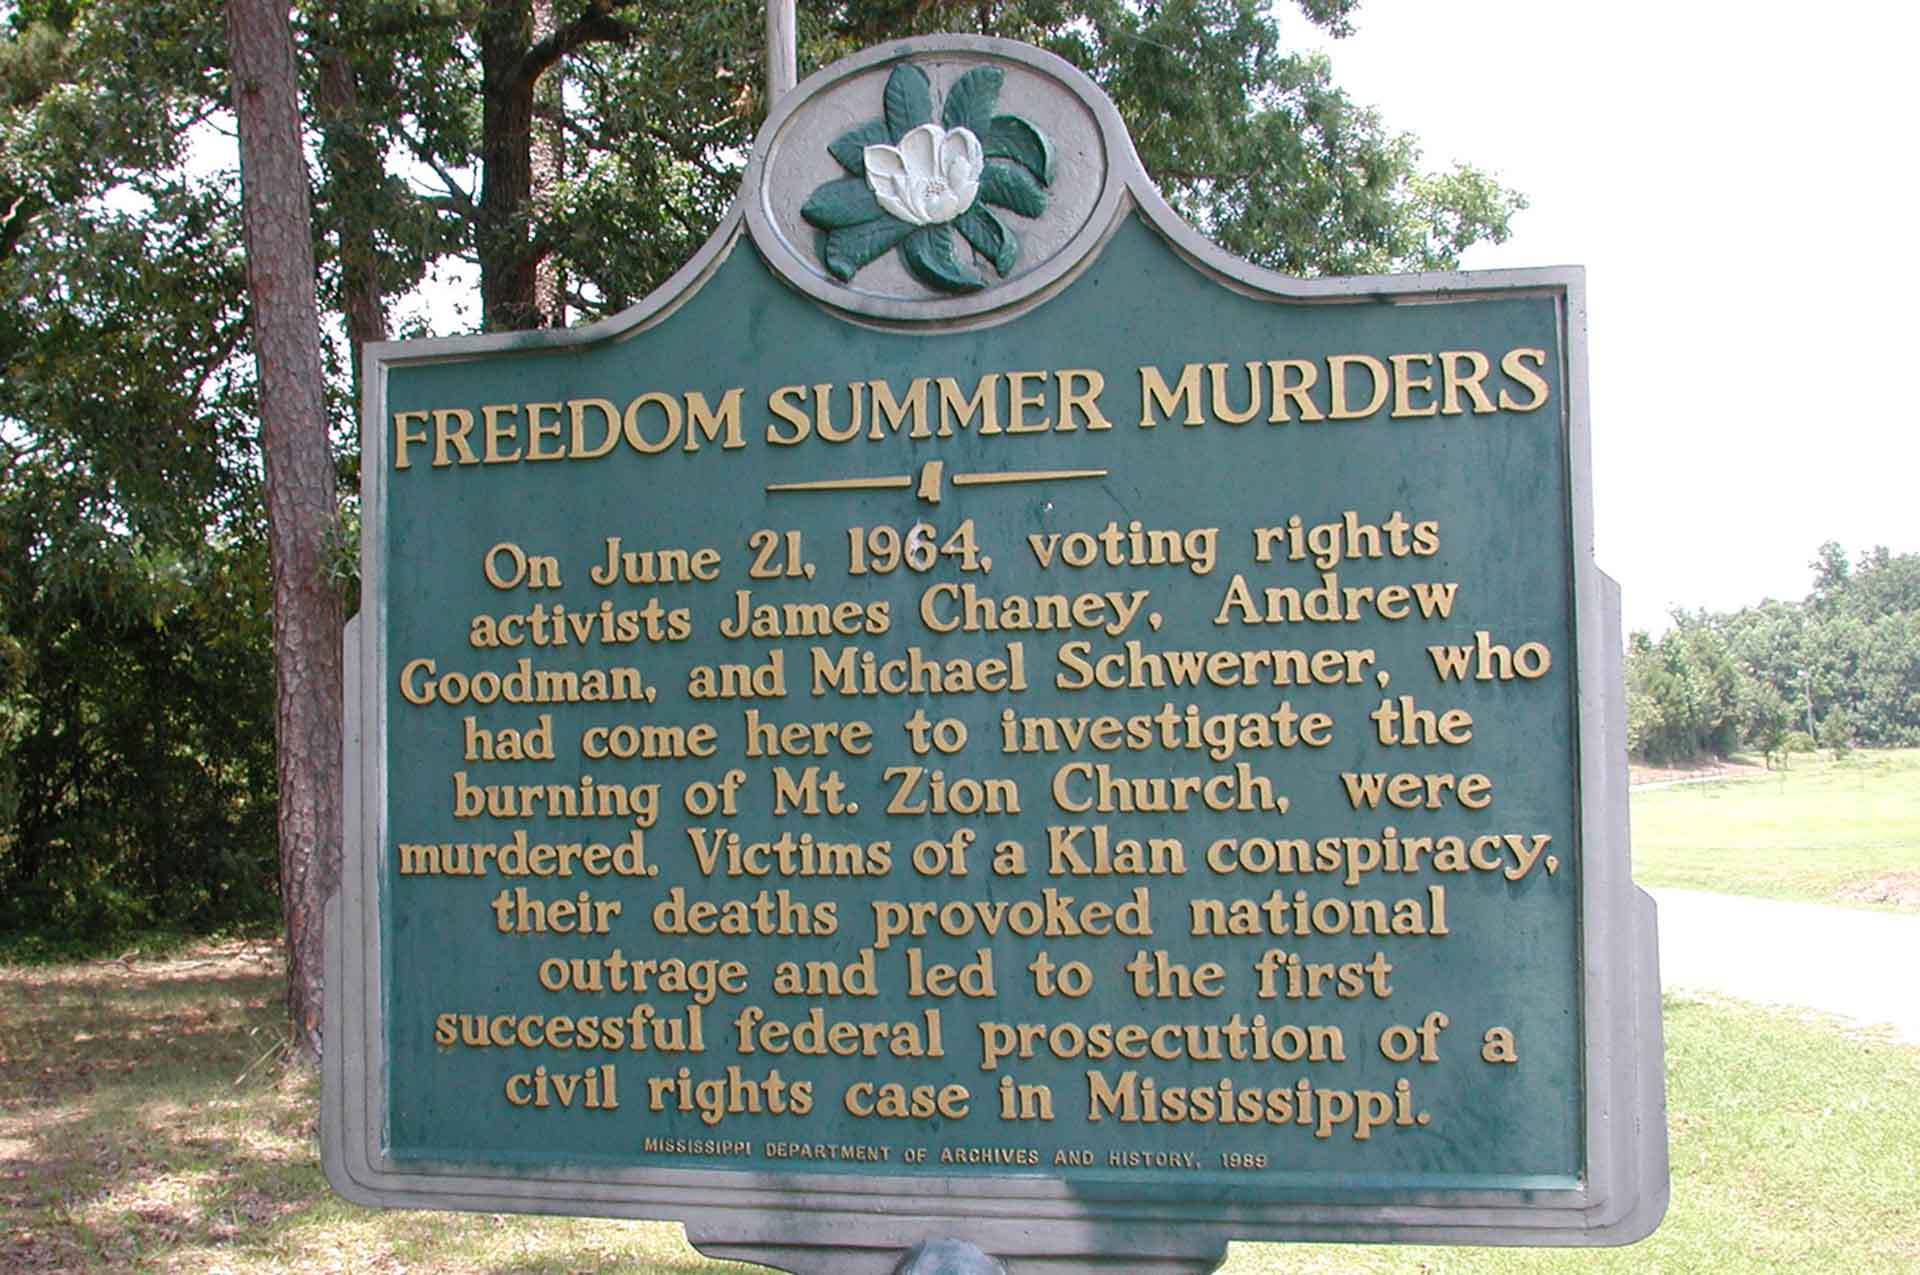 Freedom Summer Murders memorial